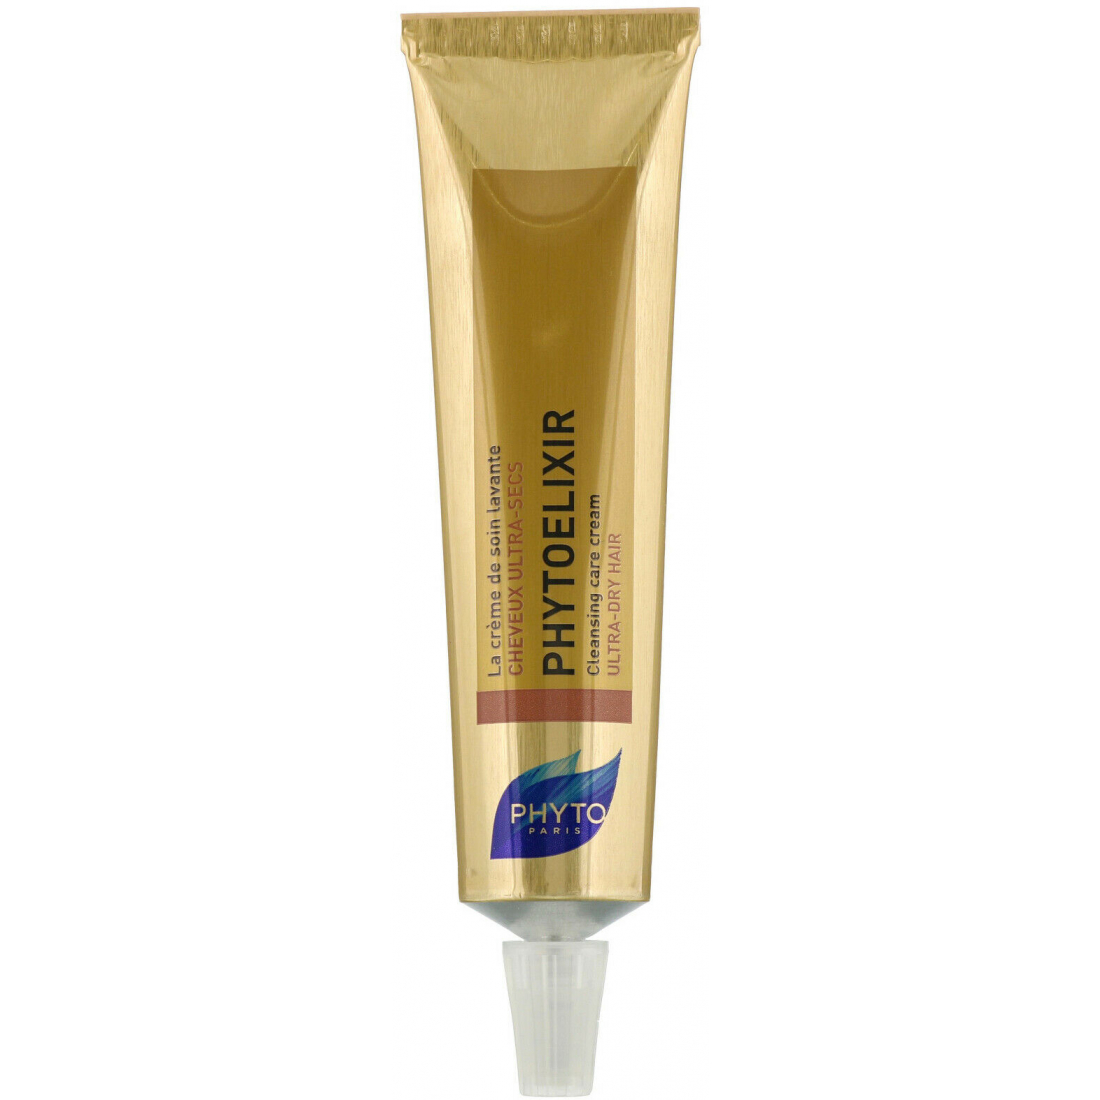 'PhytoElixir' Cleansing Cream for Dry Hair - 75 ml